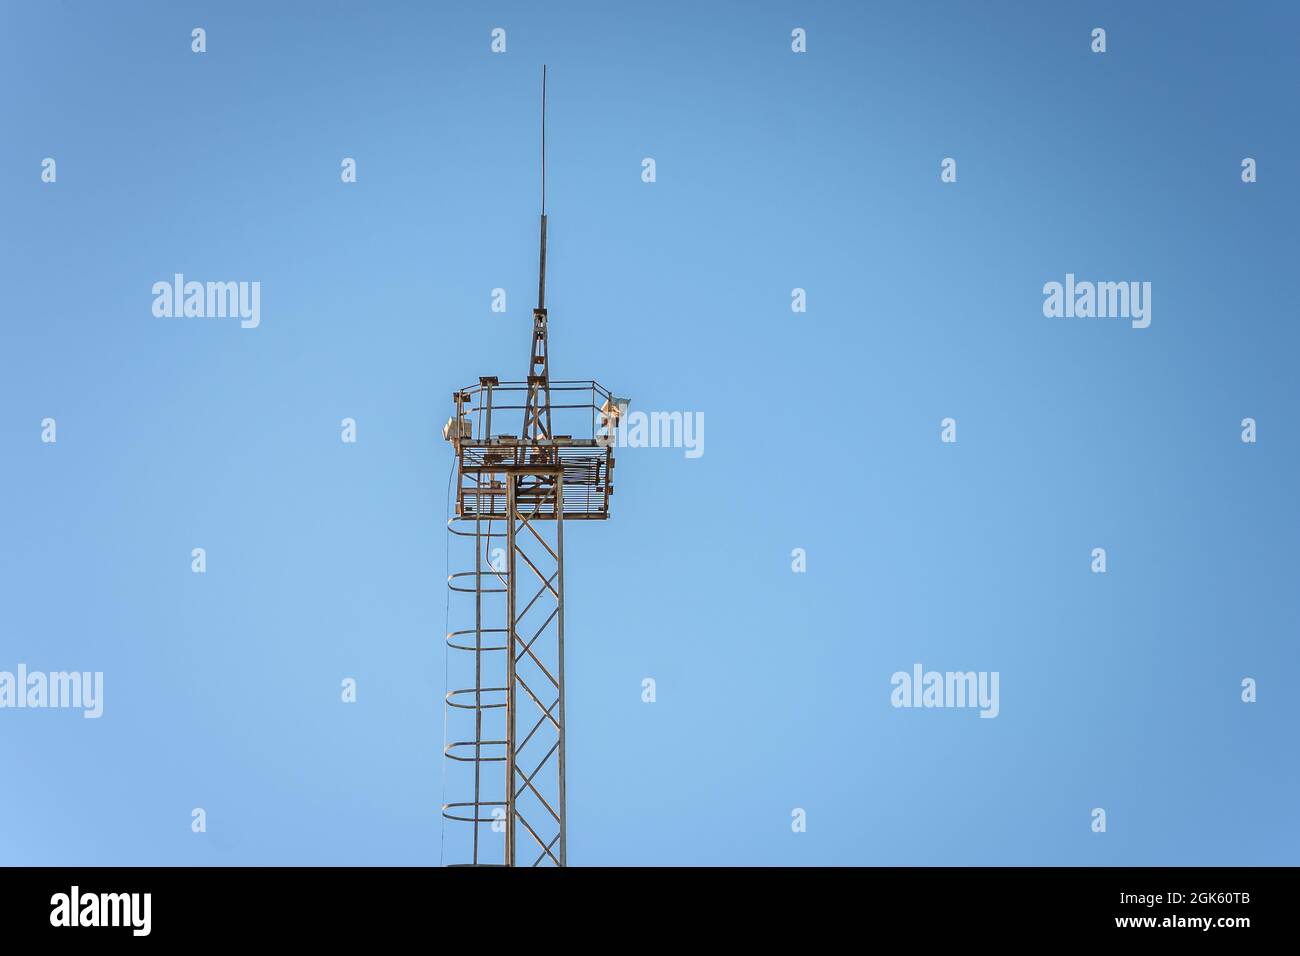 Torre parafulmine immagini e fotografie stock ad alta risoluzione - Alamy